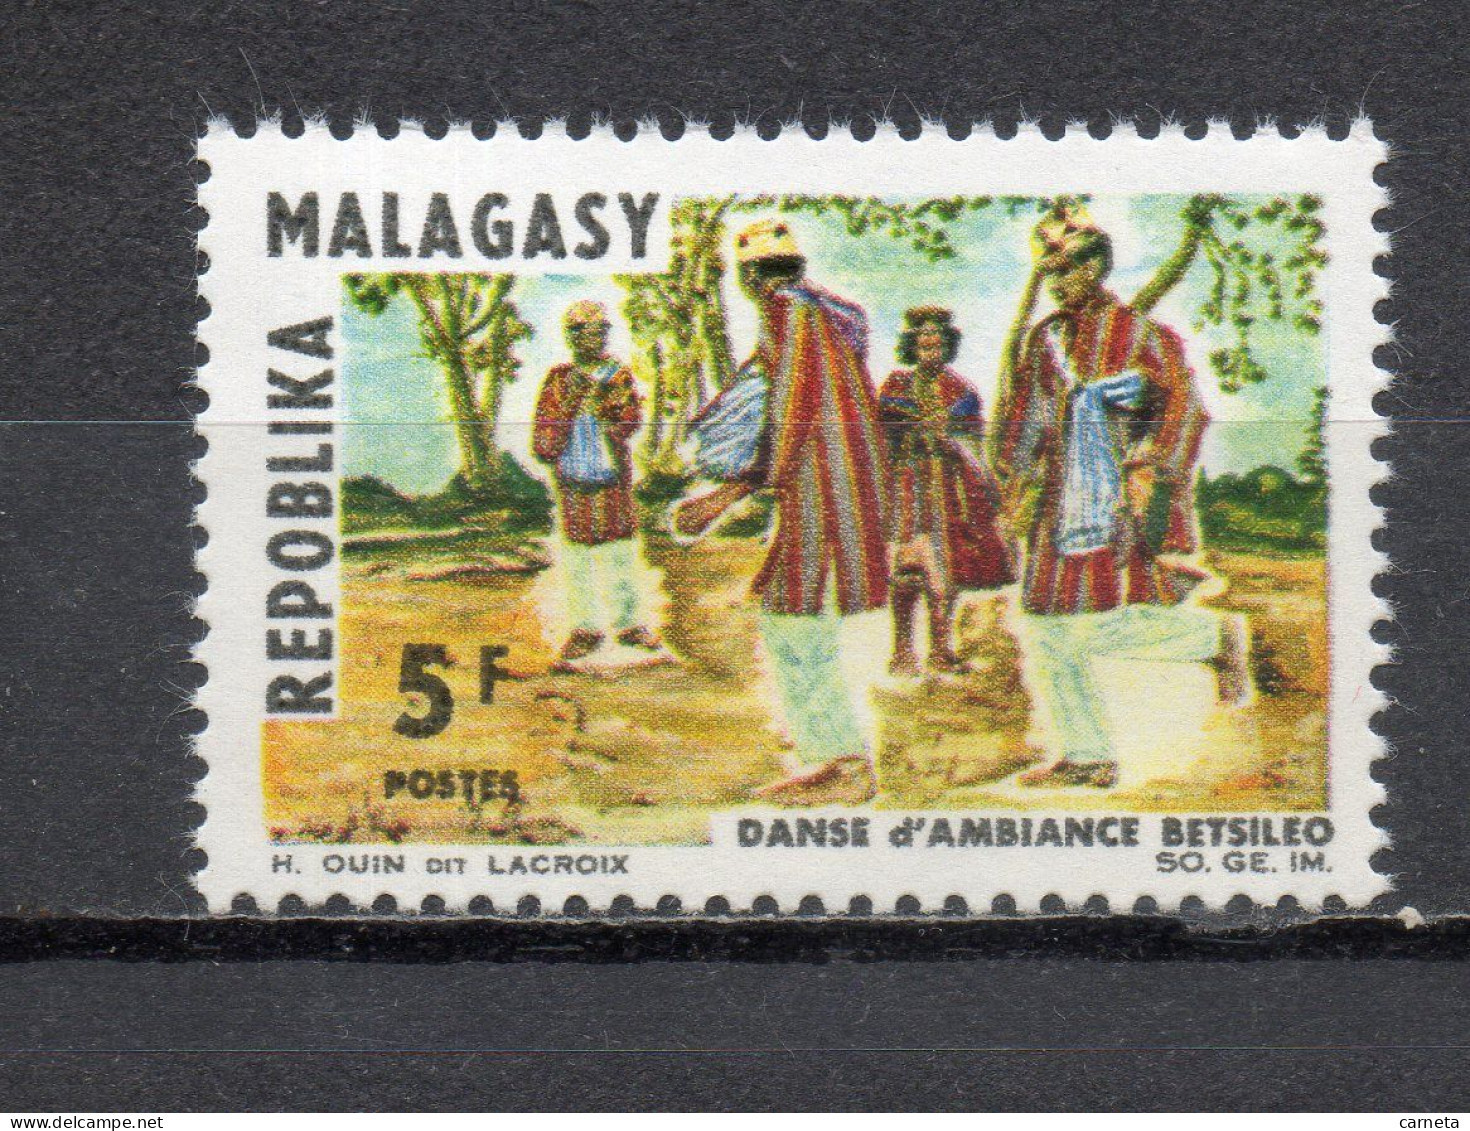 MADAGASCAR   N° 423  NEUF SANS CHARNIERE  COTE 0.50€  DANSE - Madagaskar (1960-...)